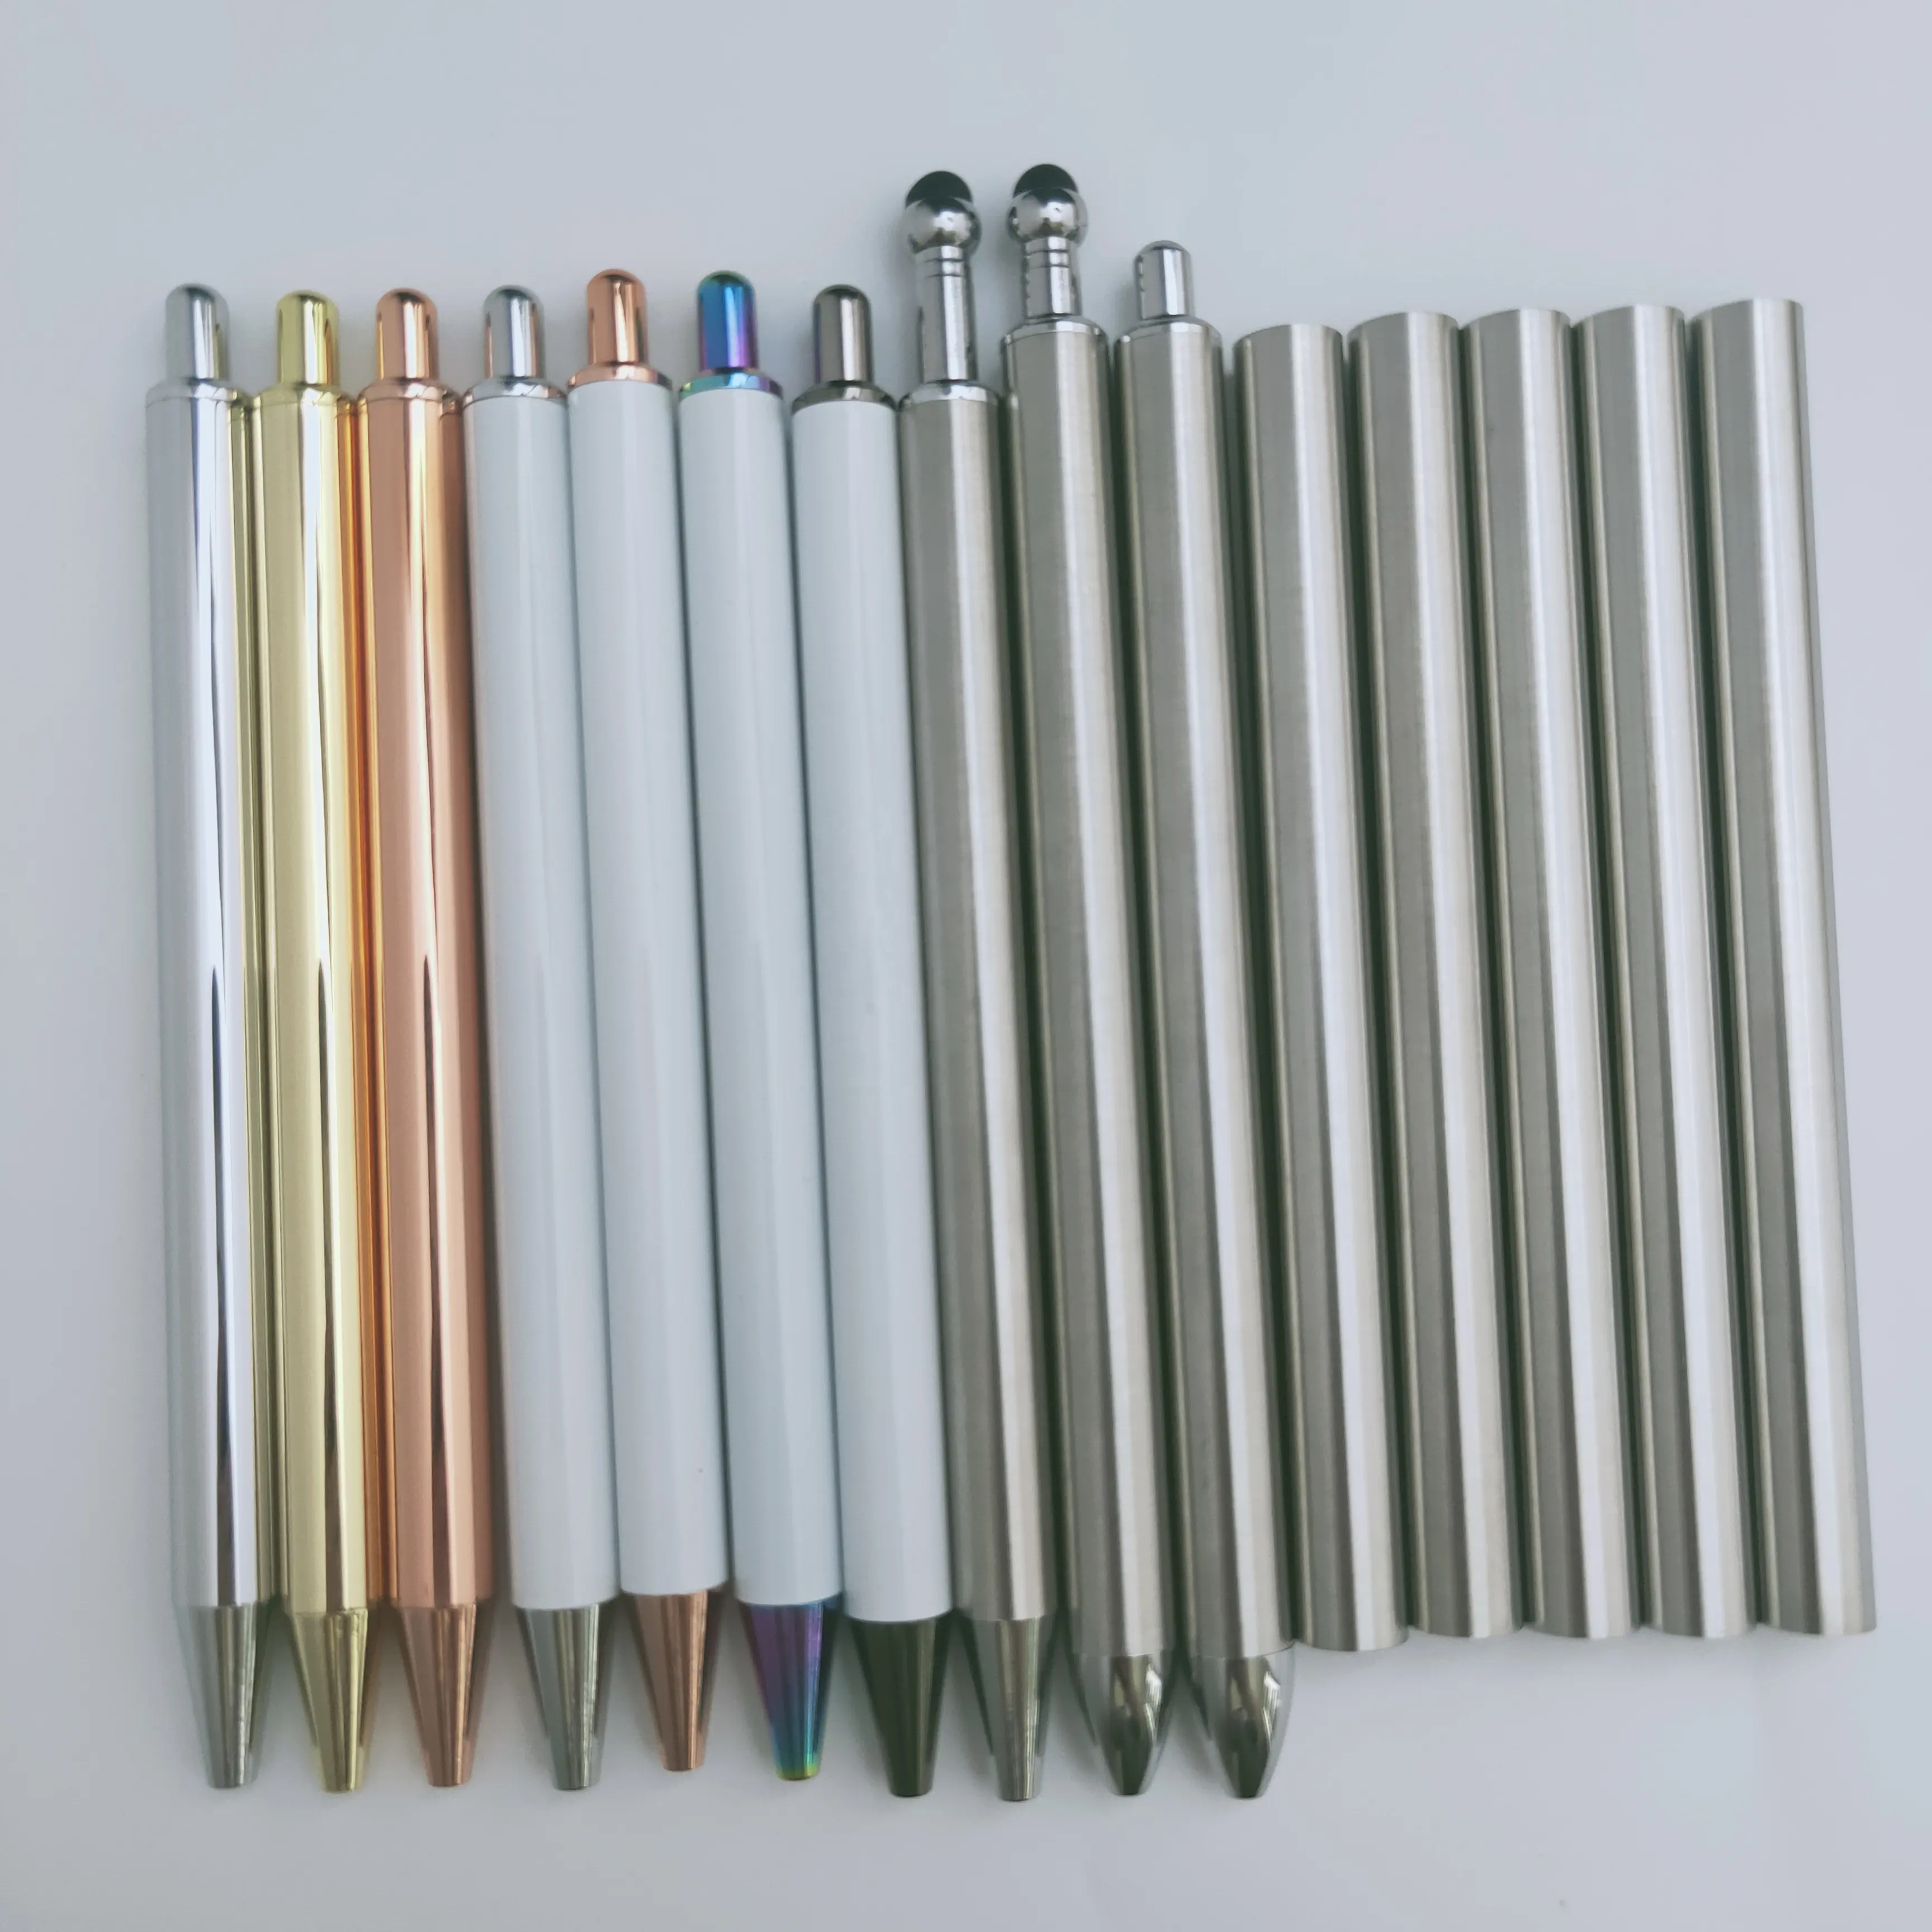 Stylus jel kalem boşlukları epoksi vinil hidro daldırma DIY projeleri işçiliği hediye Craftable paslanmaz çelik kalemler seti